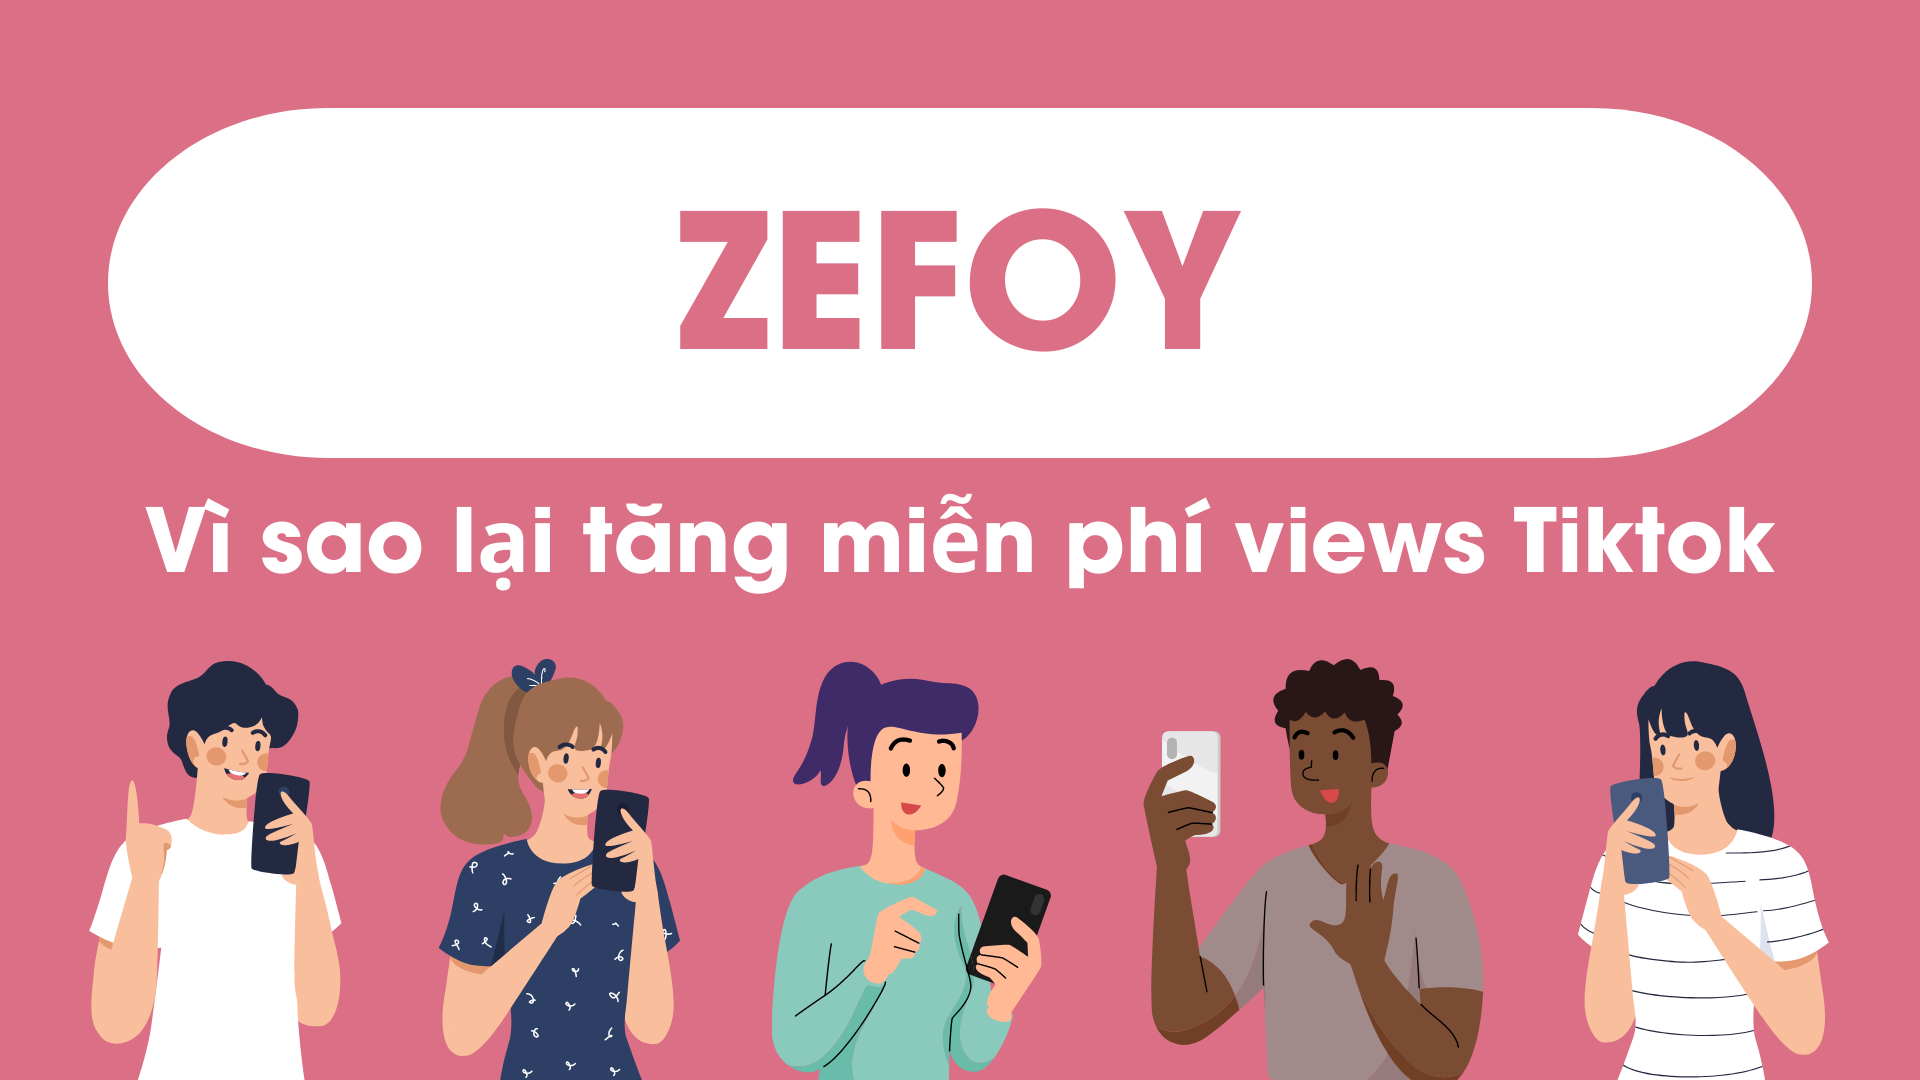 Zefoy là một trang web tăng lượt thích trên TikTok khá hiệu quả